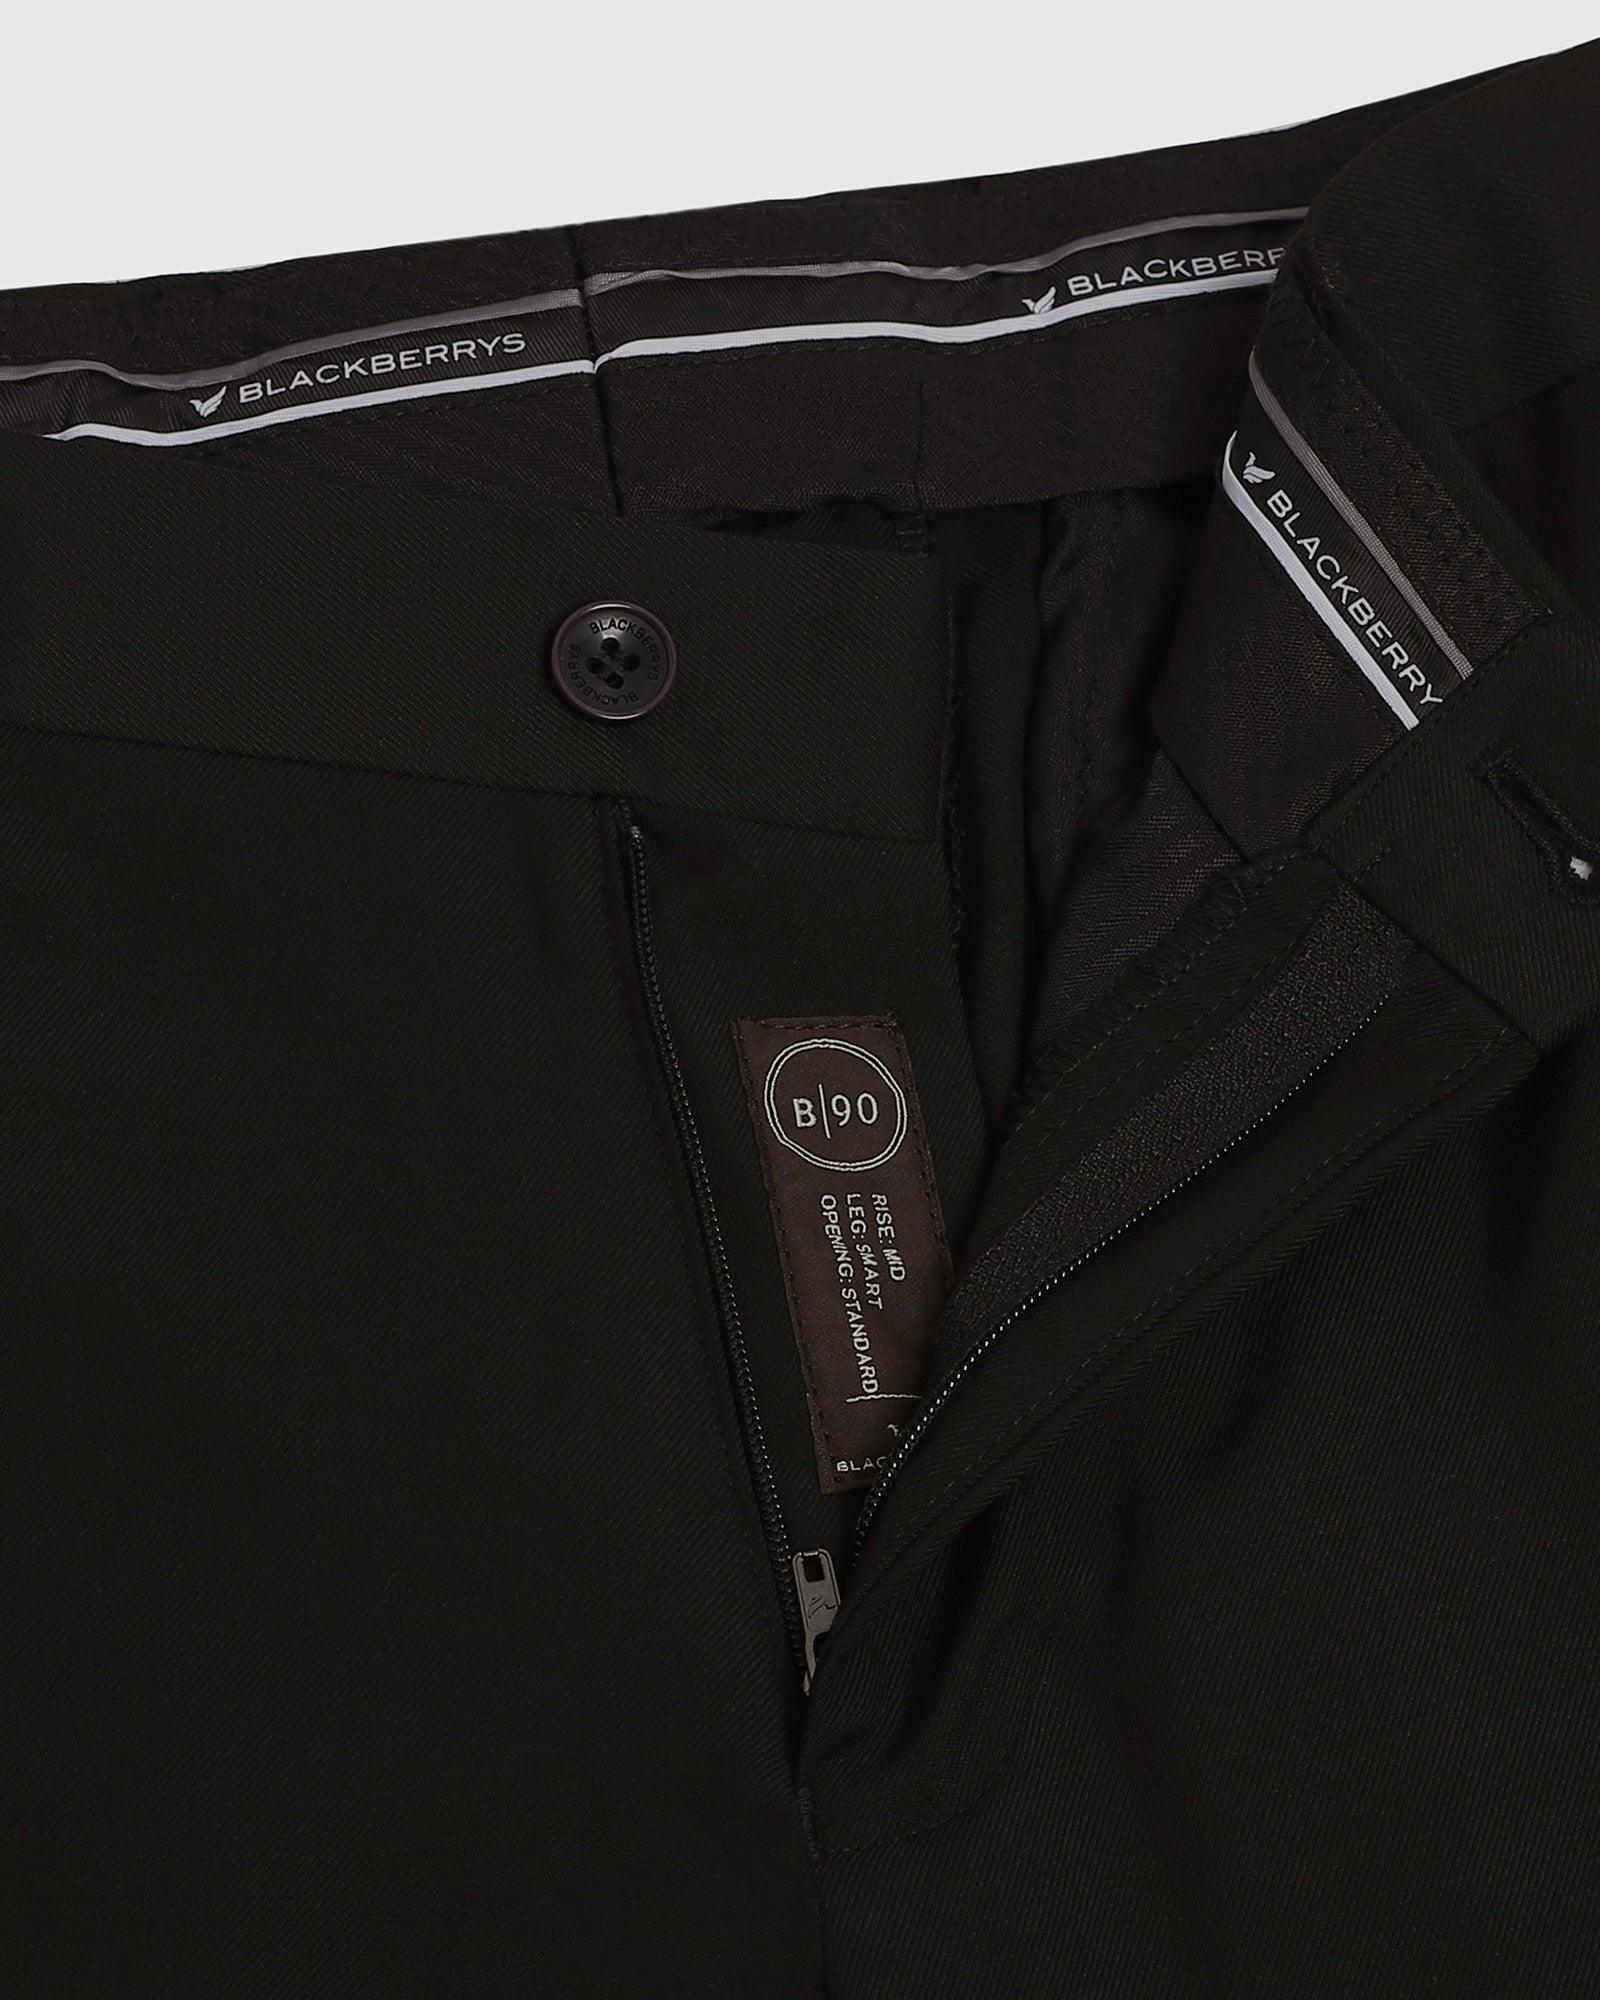 formal trousers in black b 90 bedward blackberrys clothing 6